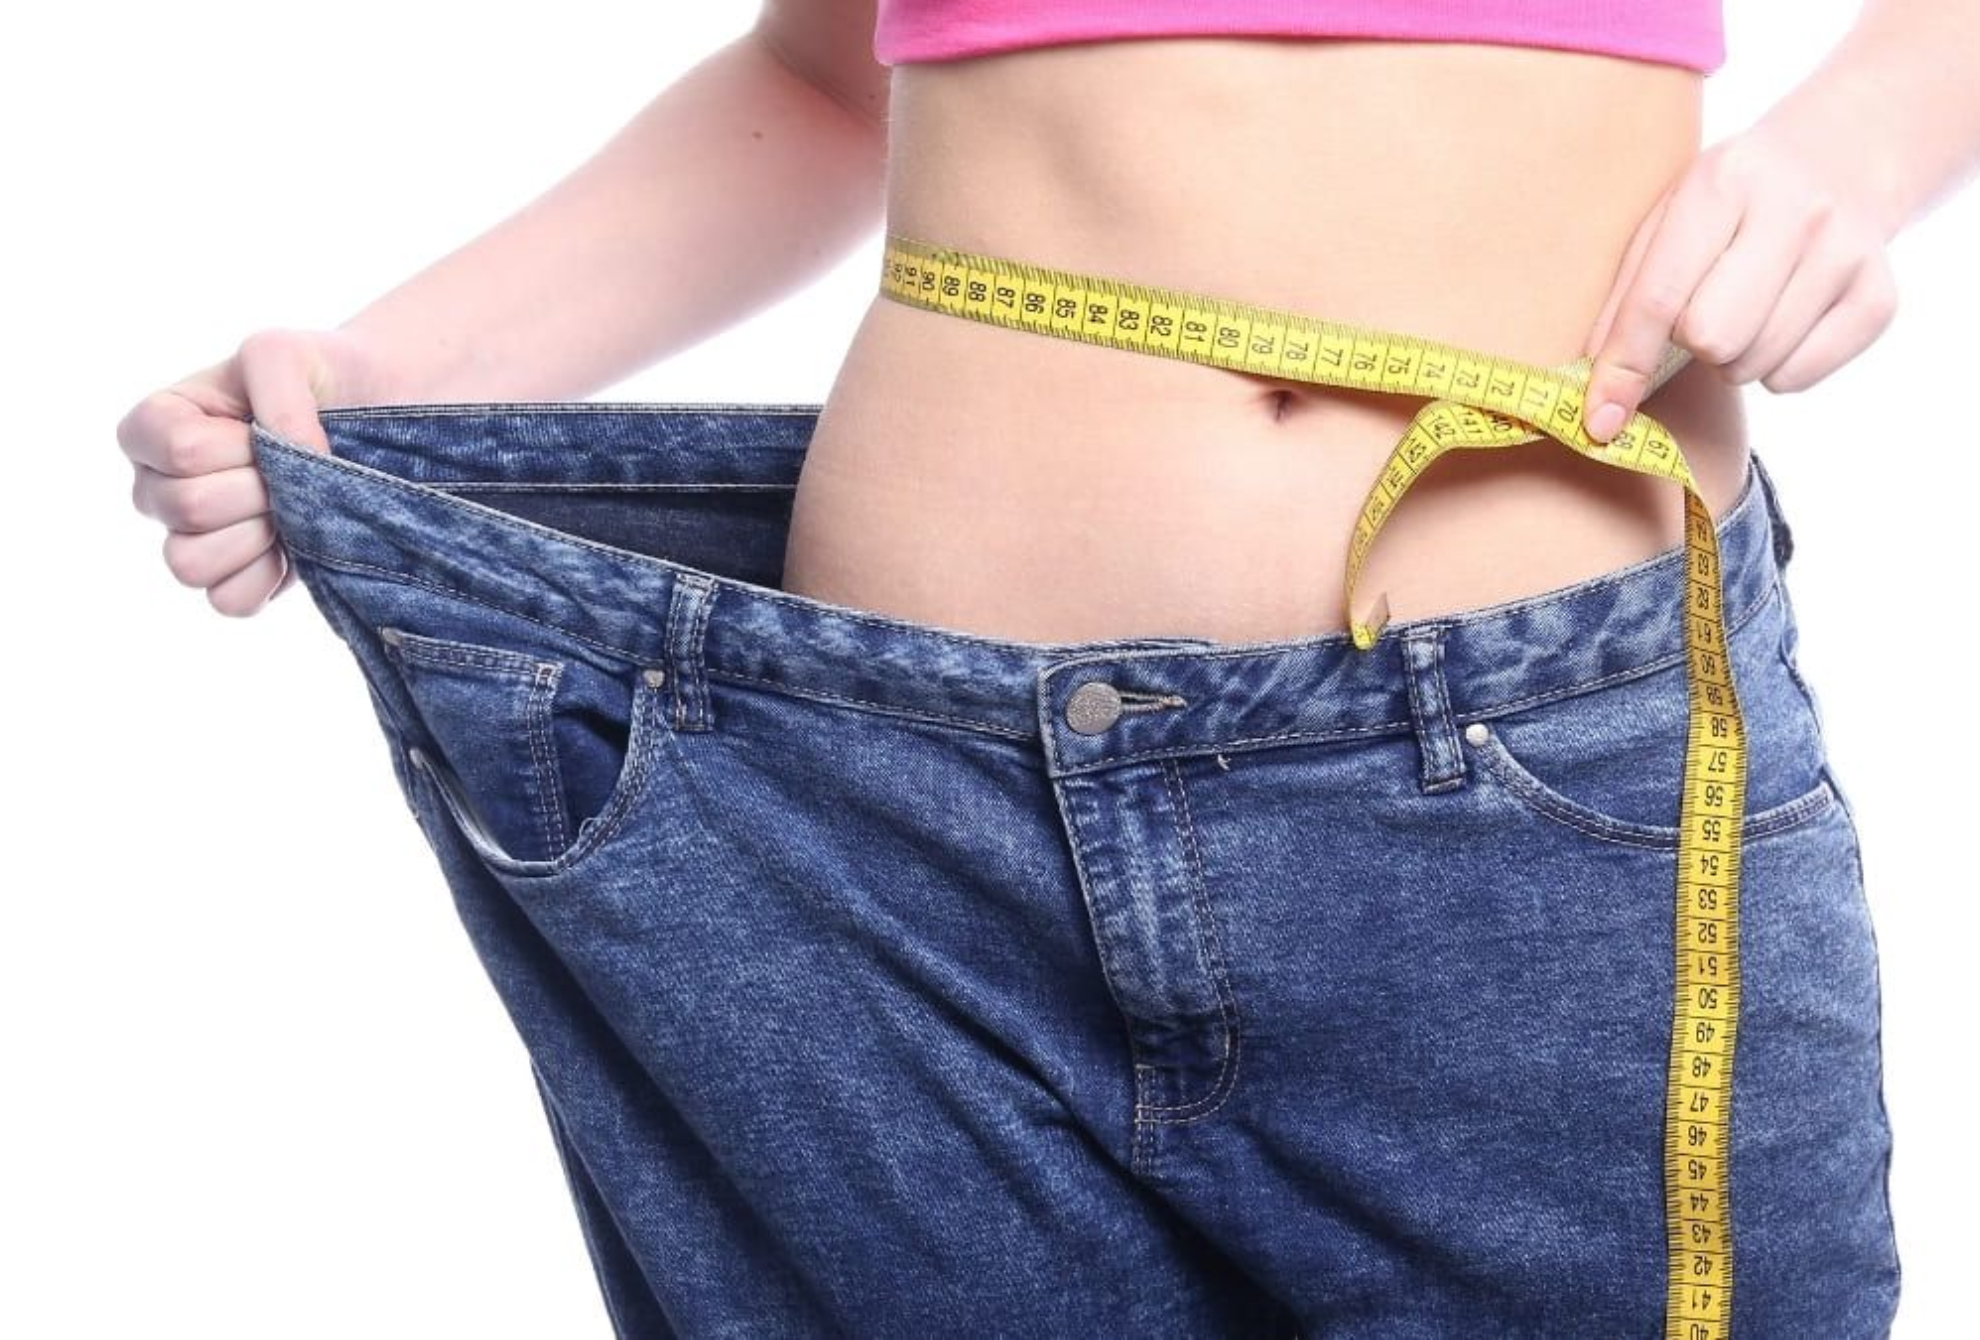 La importancia de la psicología para perder peso